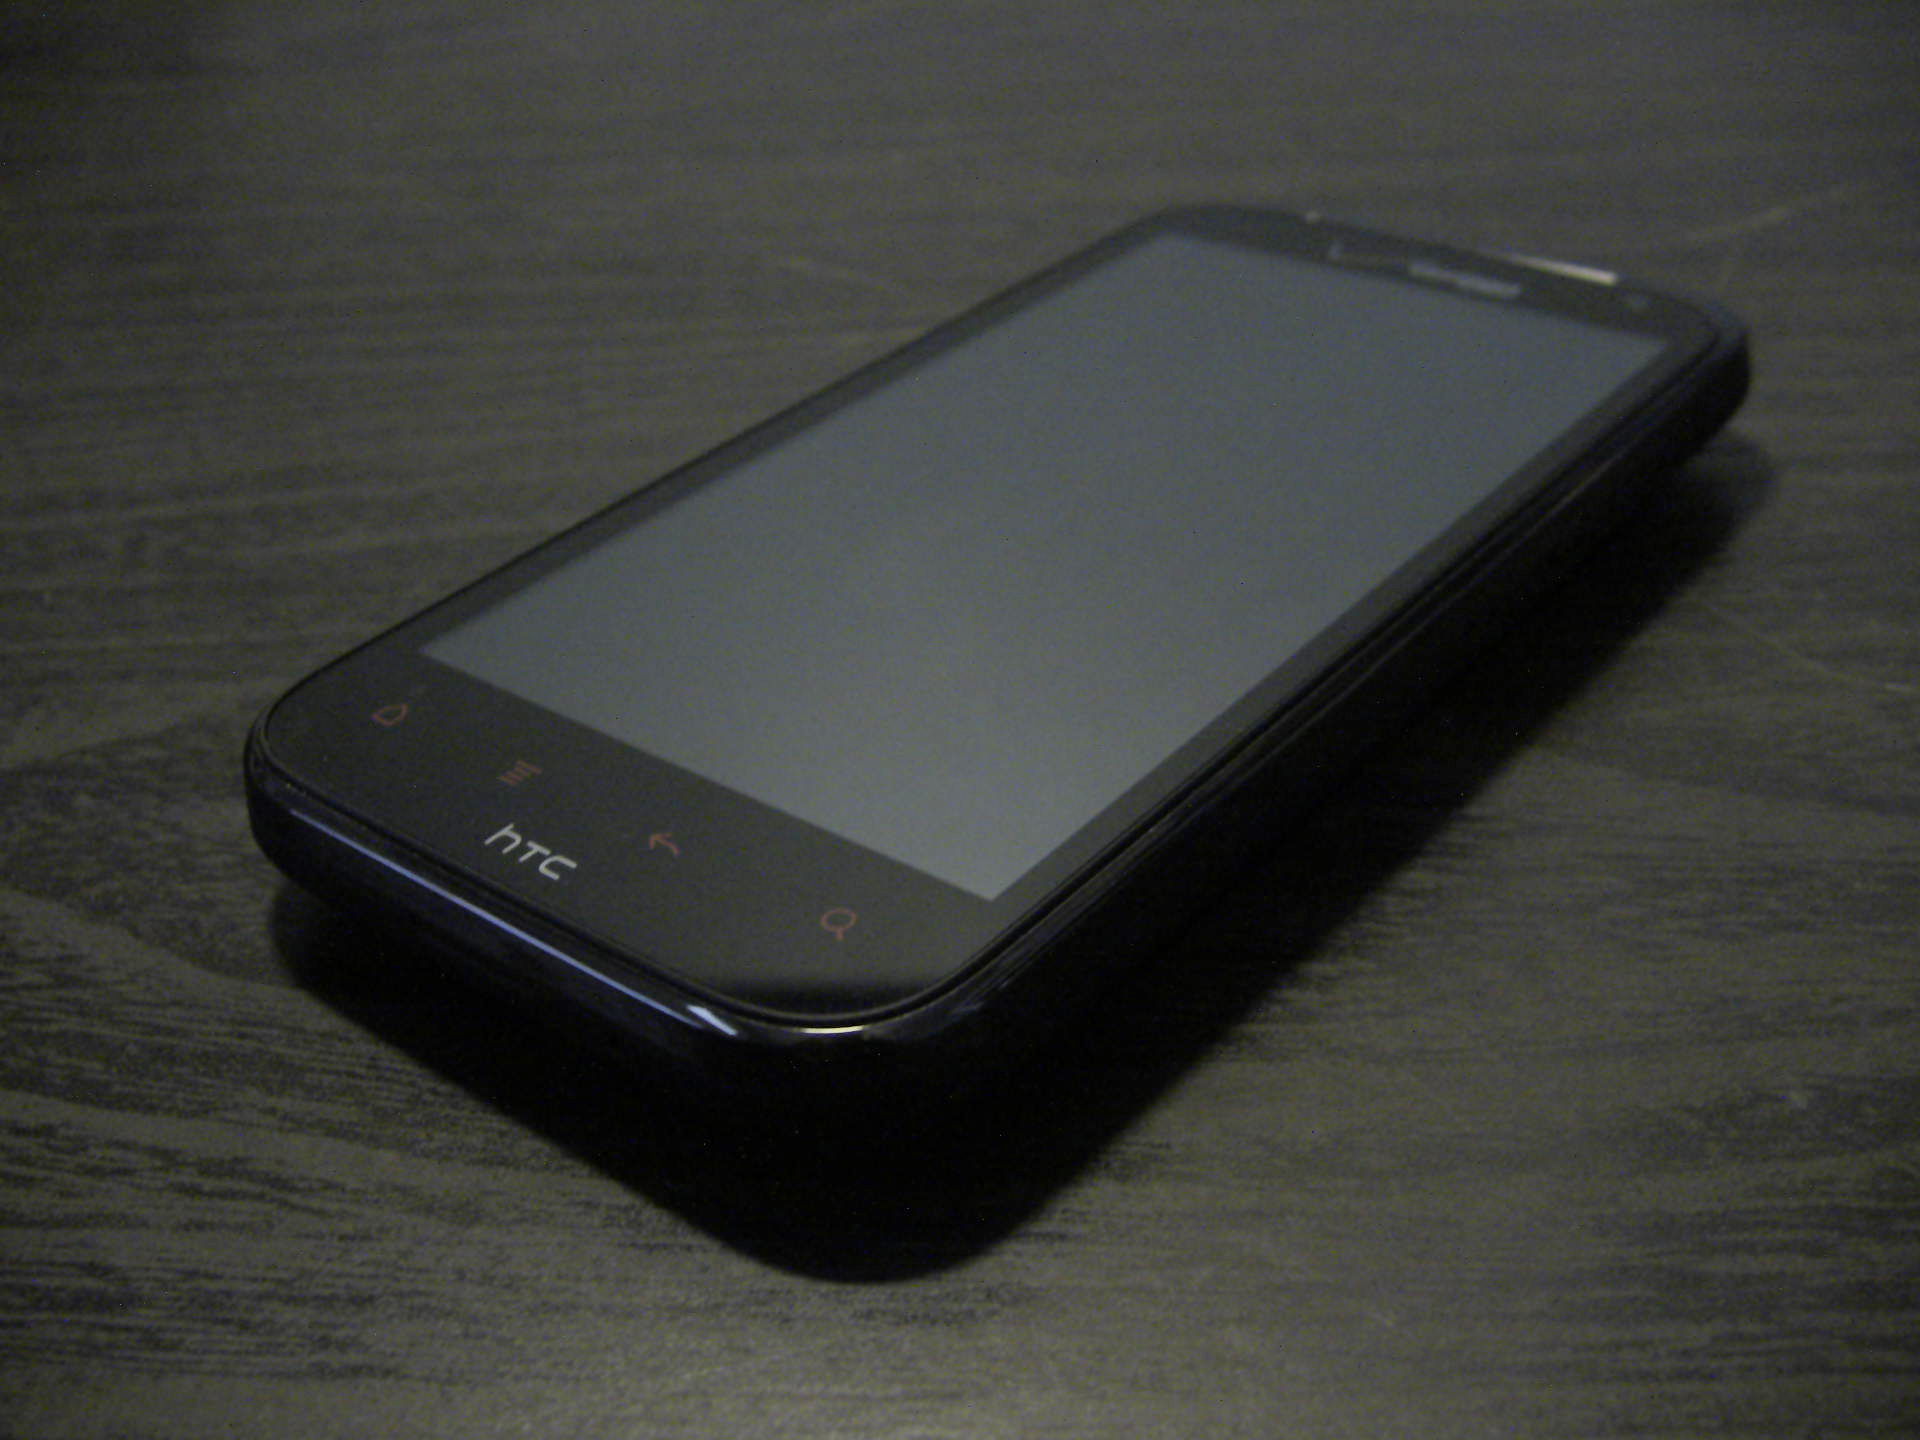 HTC Rezound: Best Smartphone Display to Date?